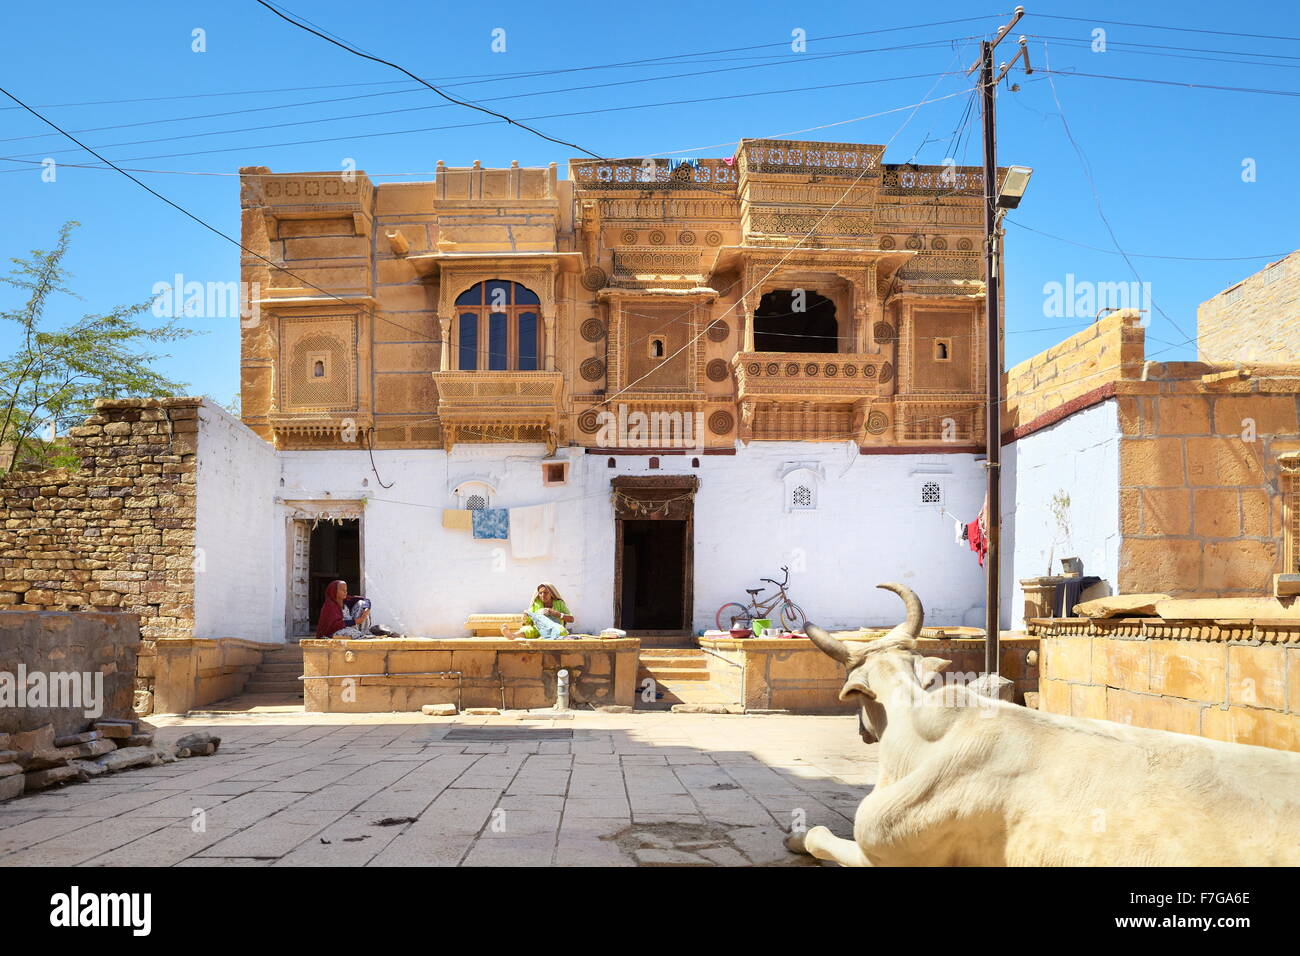 L'Inde traditionnelle vieille haveli (hôtel particulier) dans la région de Fort Jaisalmer, Jaisalmer, Inde Banque D'Images